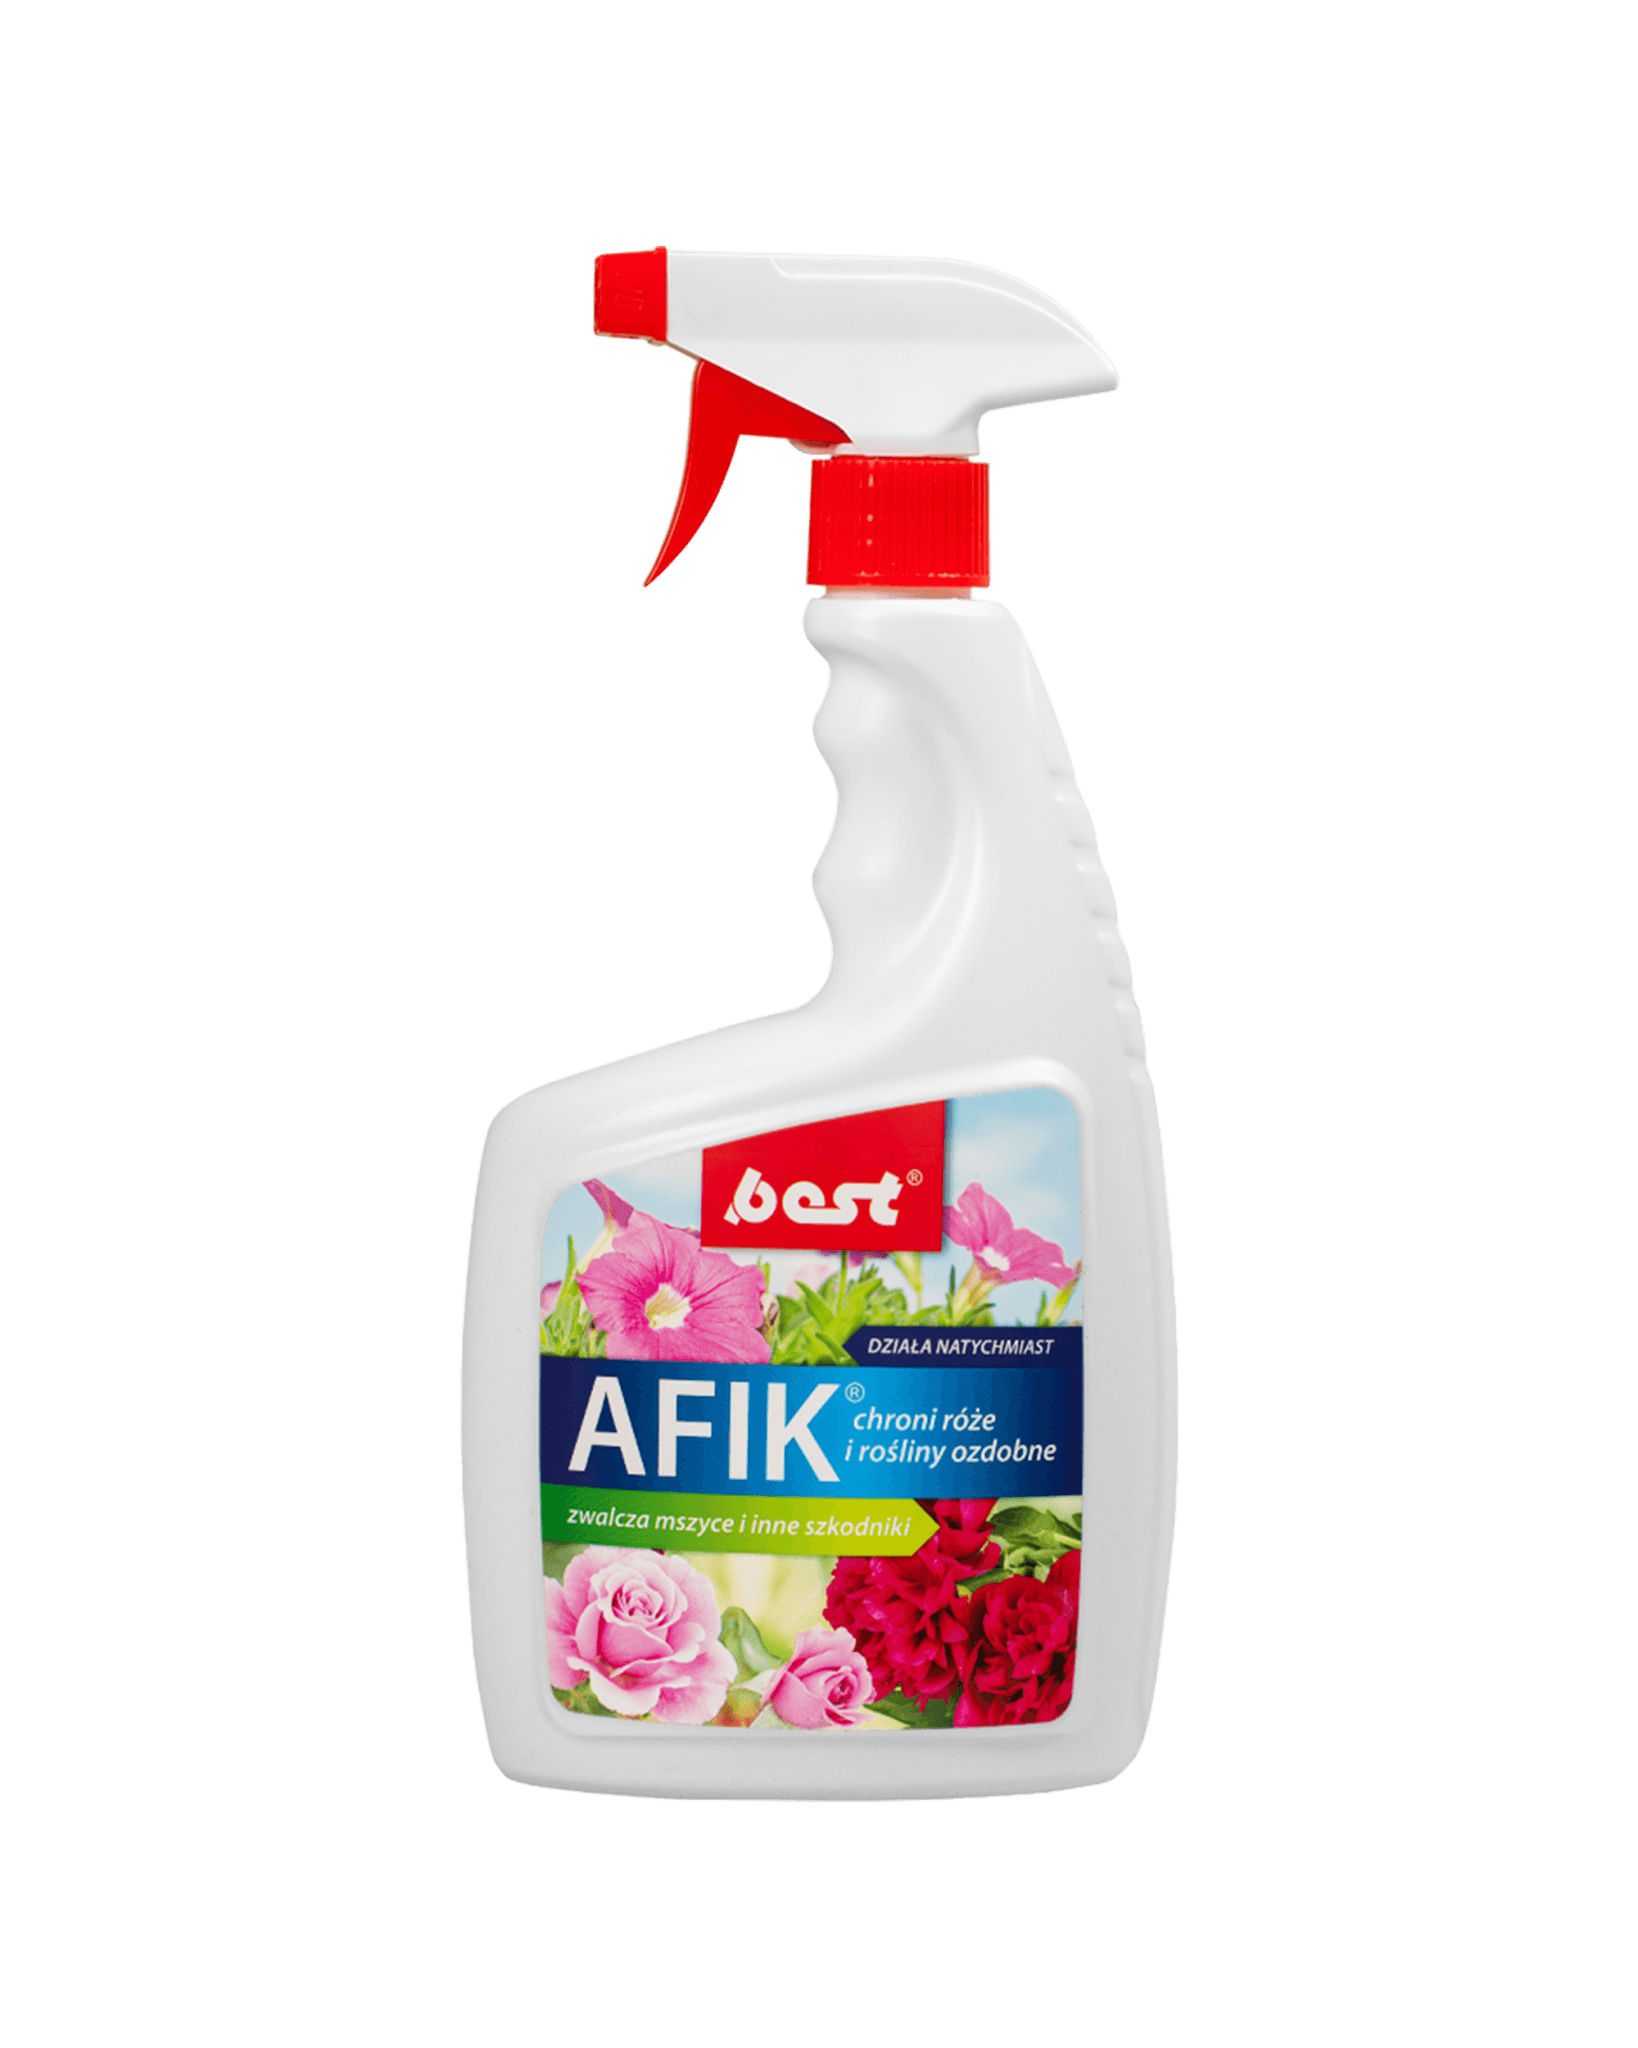 AFIK atomizer chroni róże i rośliny ozdobne - 750ml - BEST-PEST